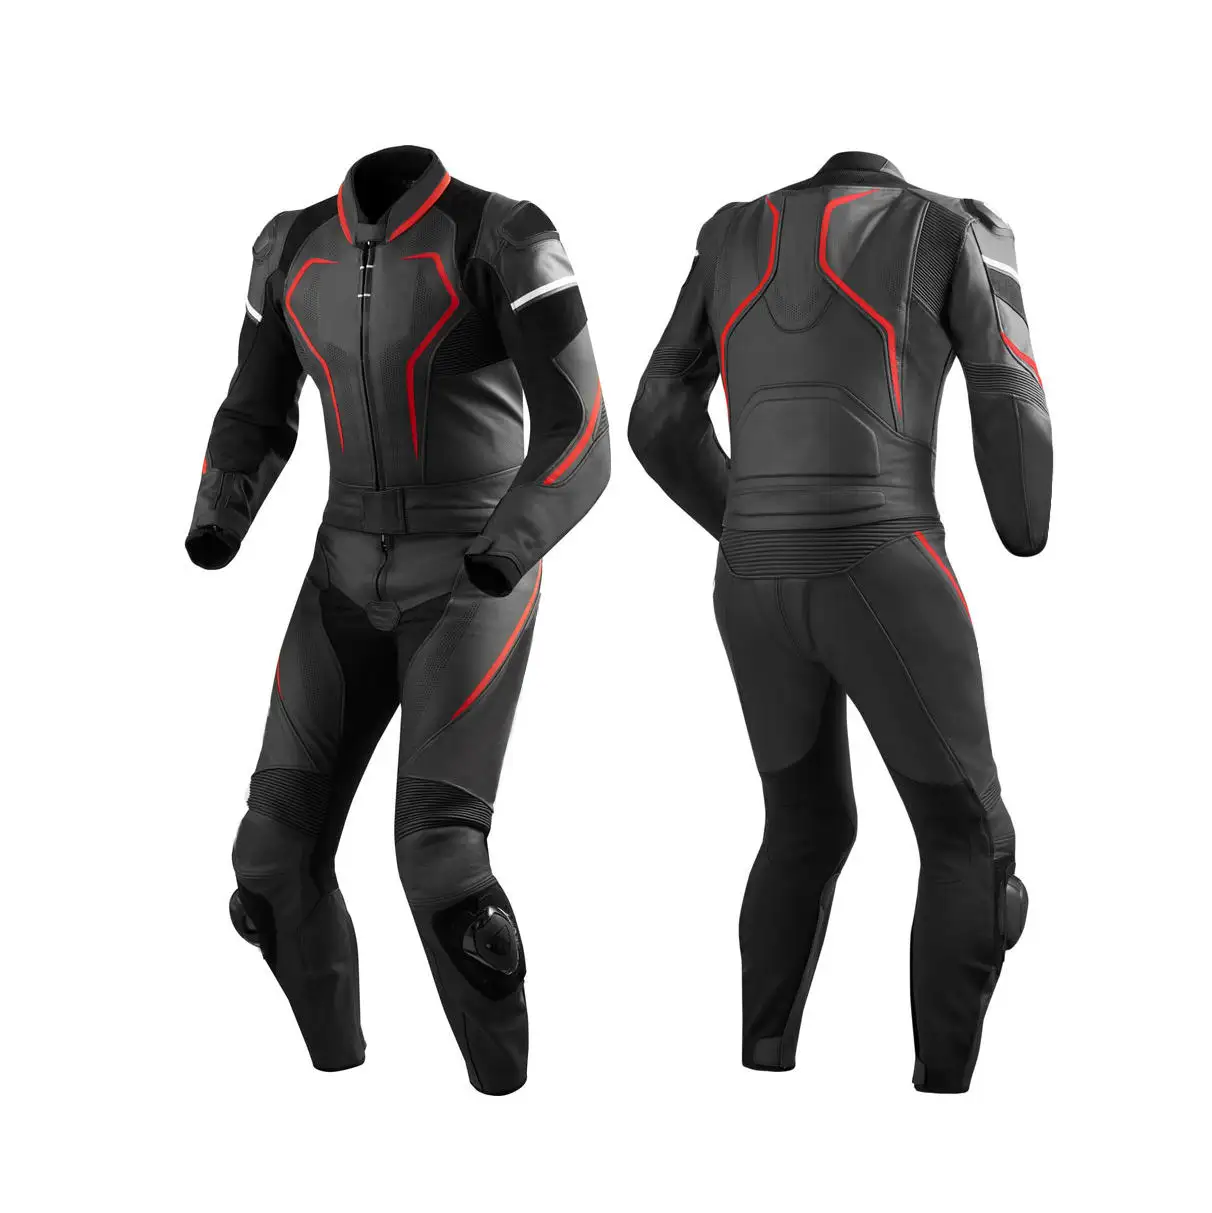 Ucuz fiyat motosiklet takım elbise toptan gerçek deri iki adet tüm hava bisikletçinin sürme takım erkekler için